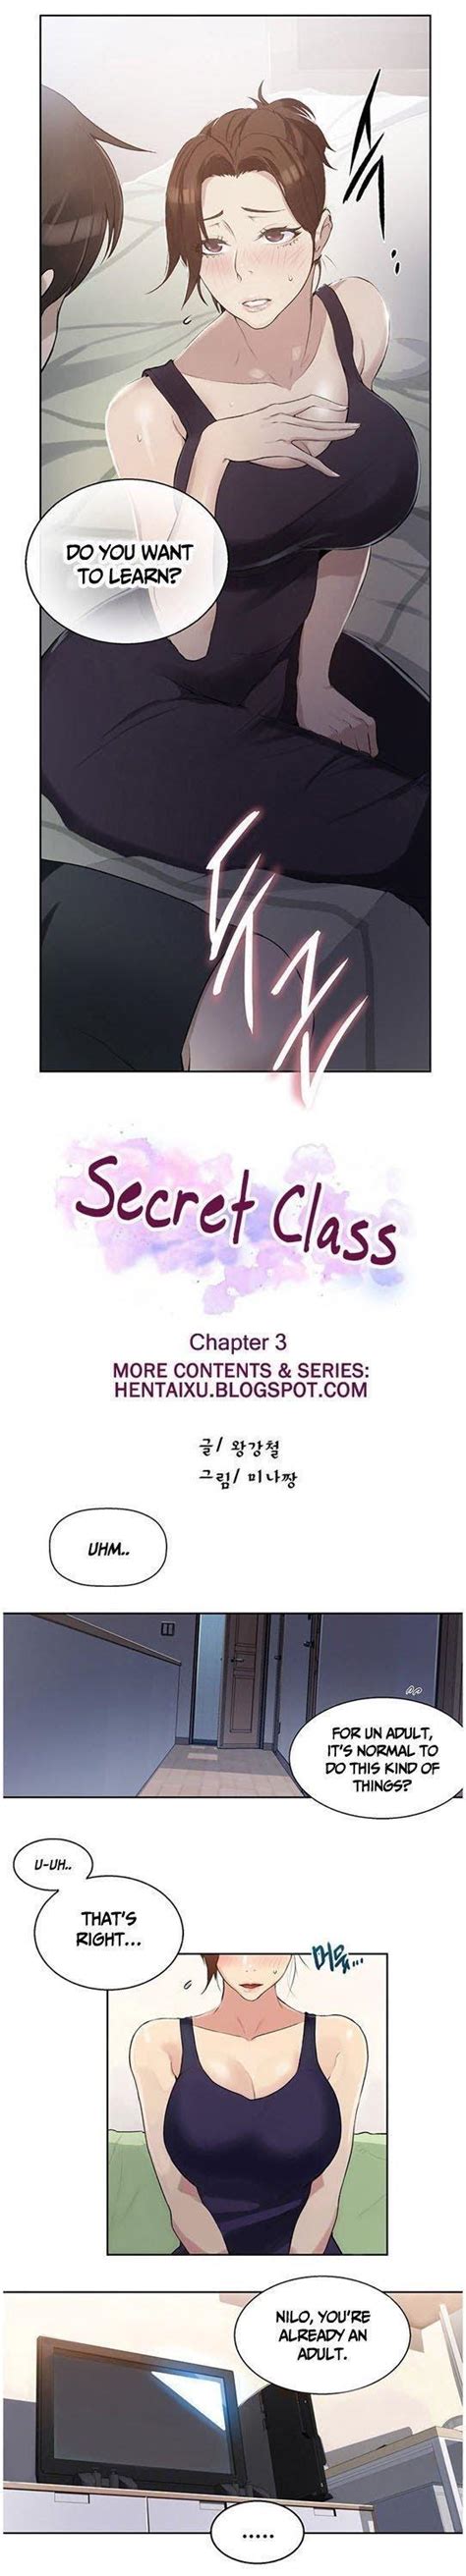 Secret Class Chapter 3 Secret Class Manhwa Online